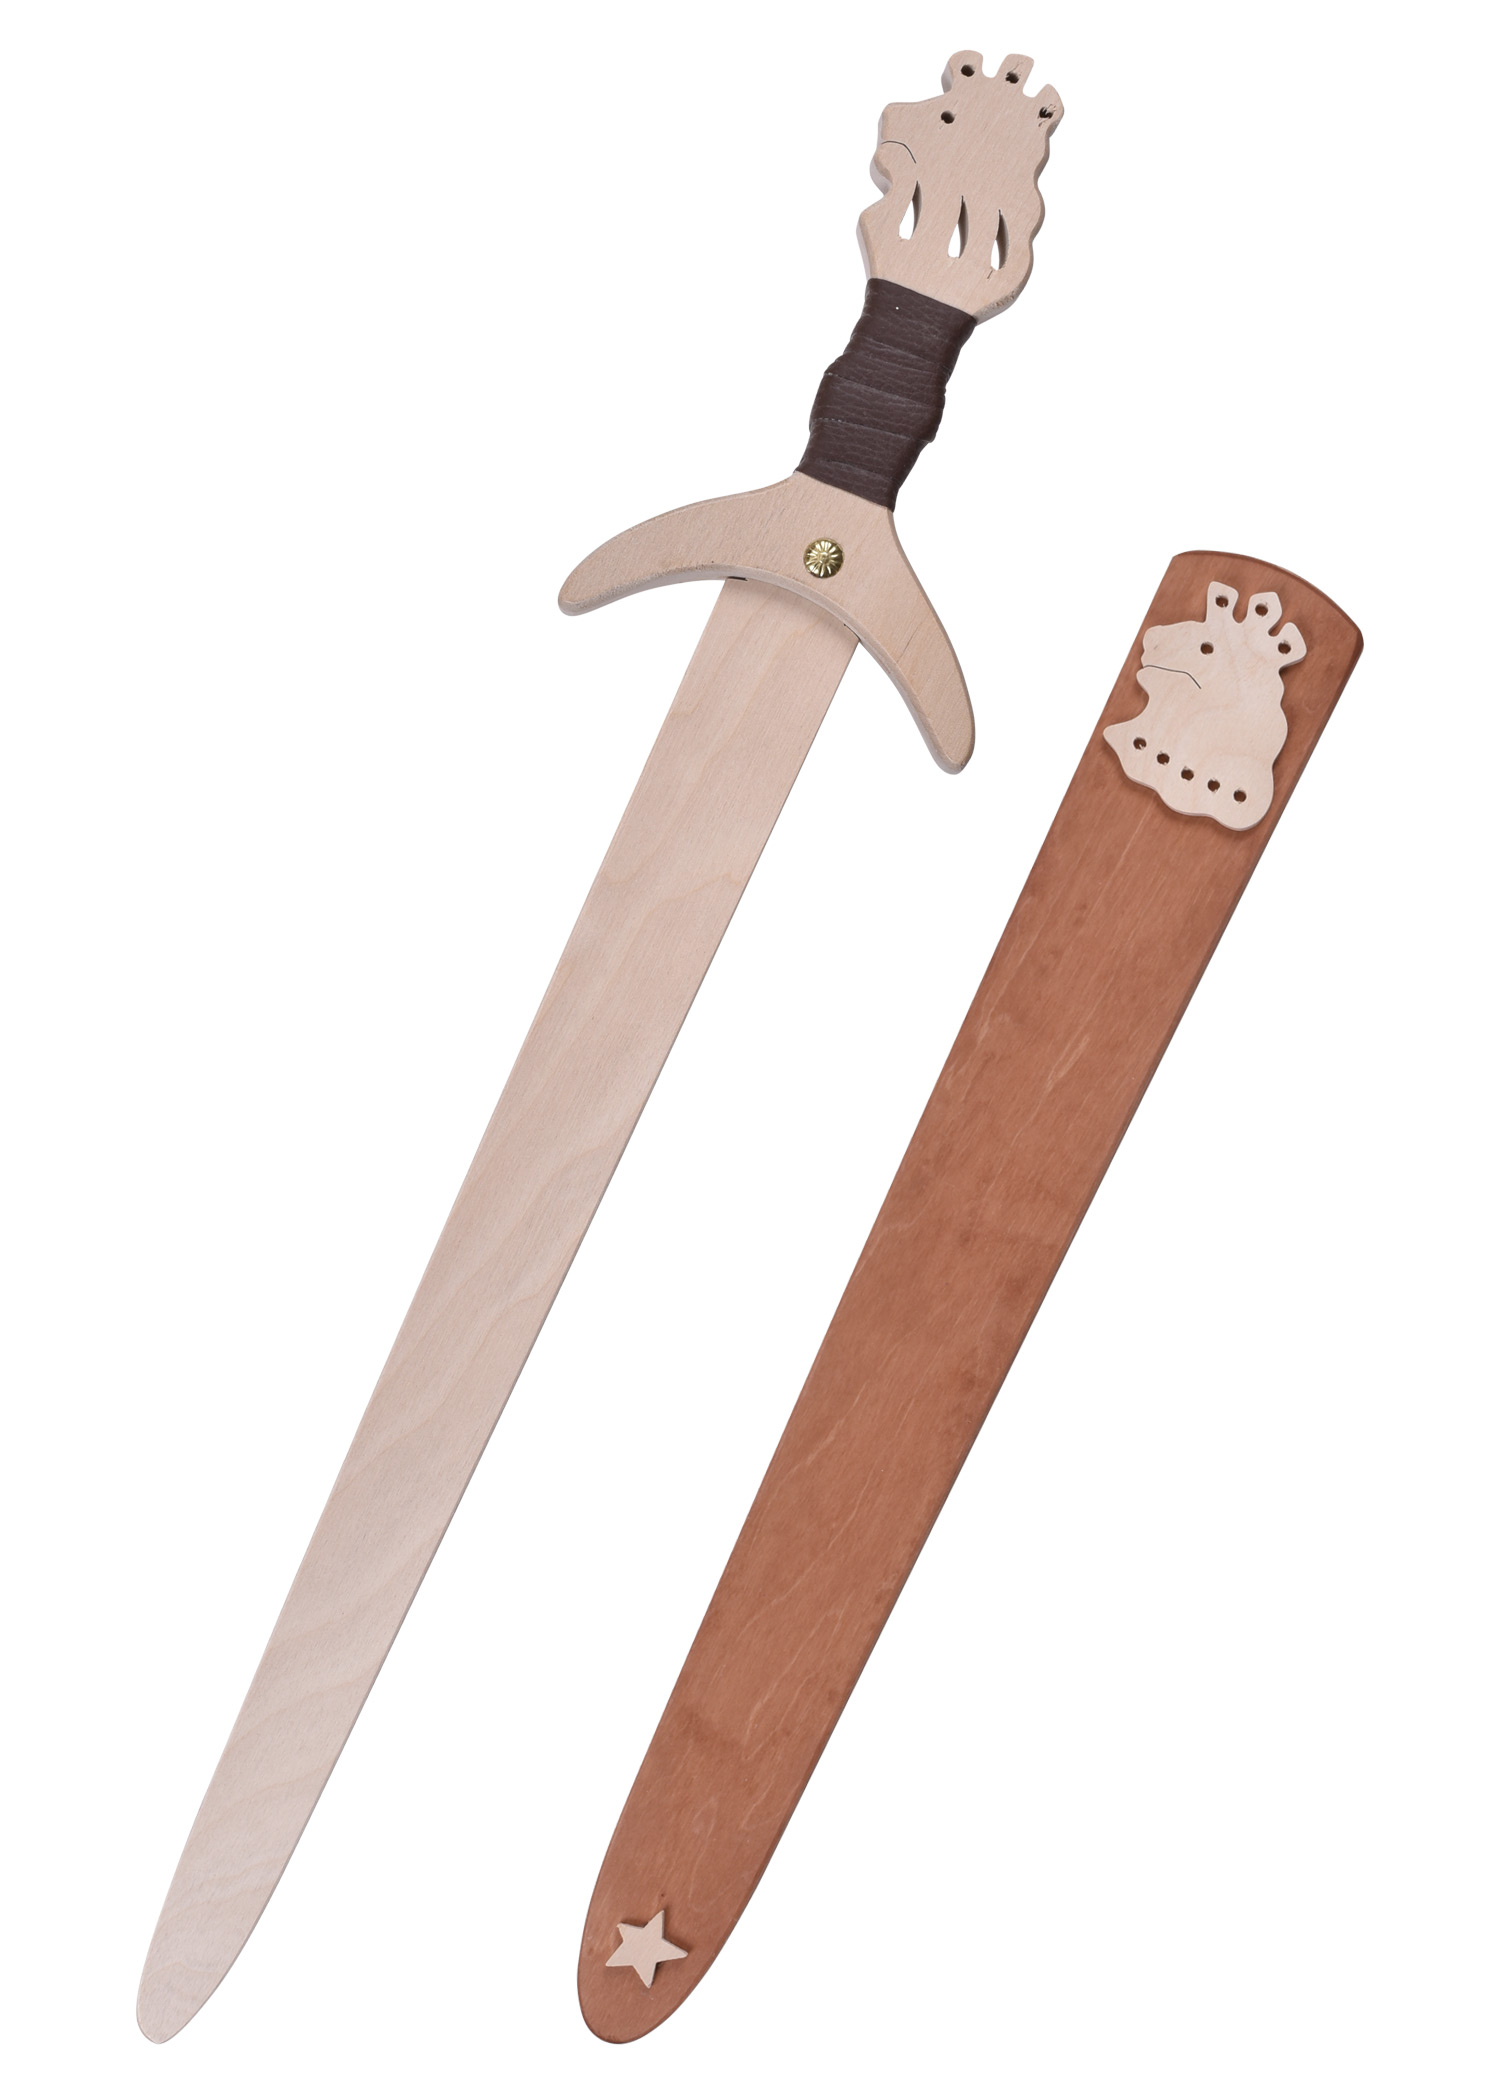 Kinder Ritterschwert Löwenstein aus Holz, mit Scheide, Länge 35 cm